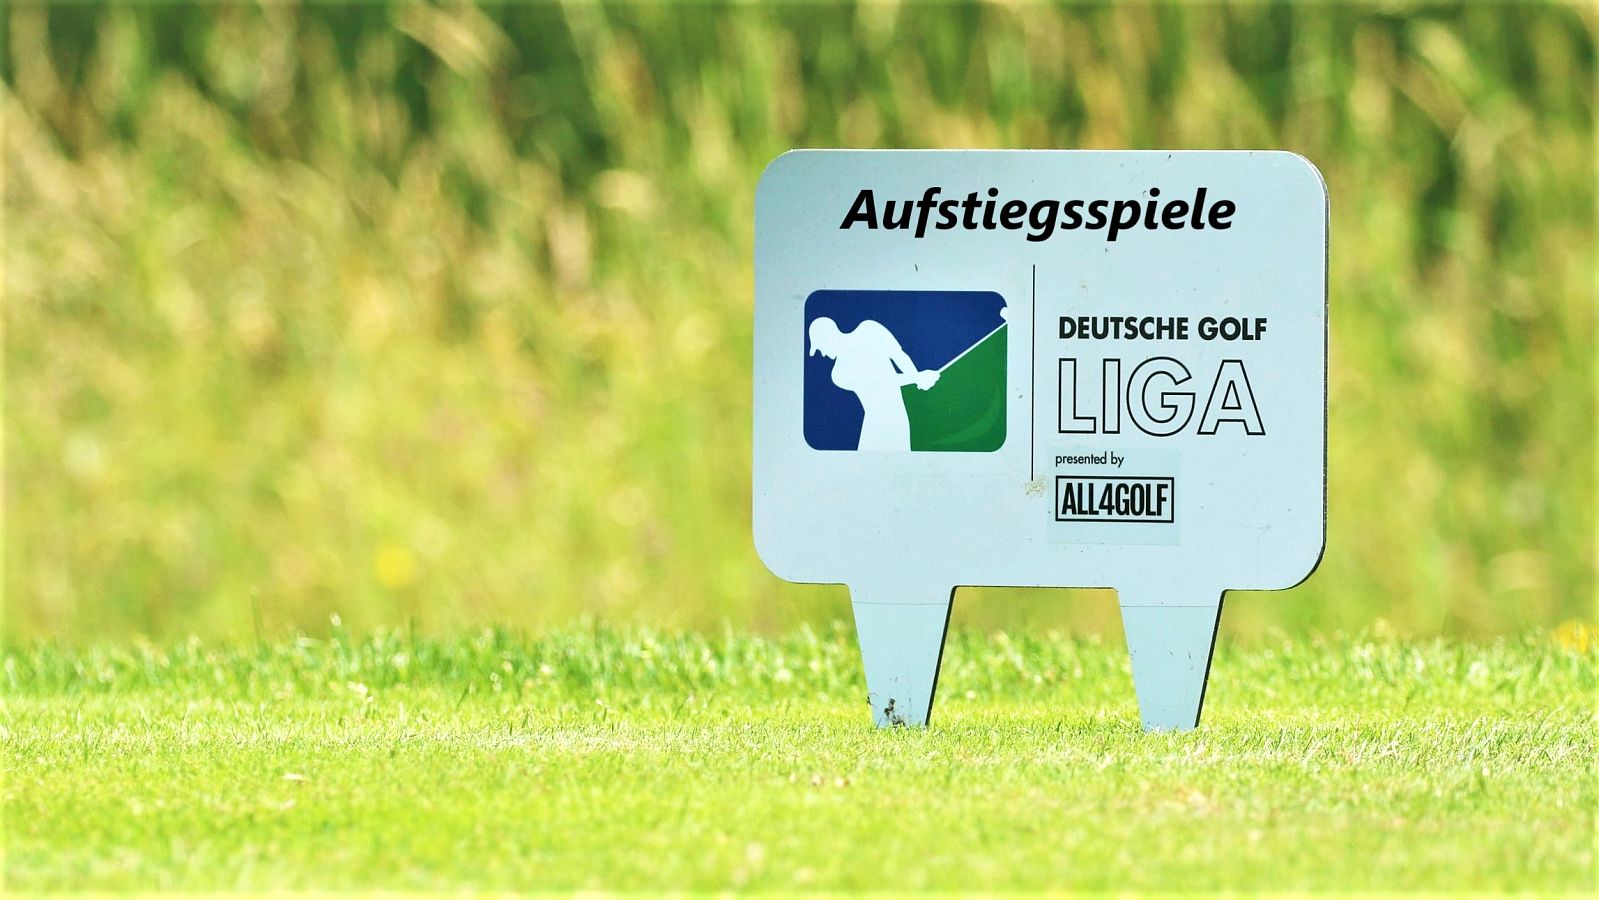 Mit Golf.de live bei den Aufstiegsspielen zur 1. Bundesliga dabei sein.